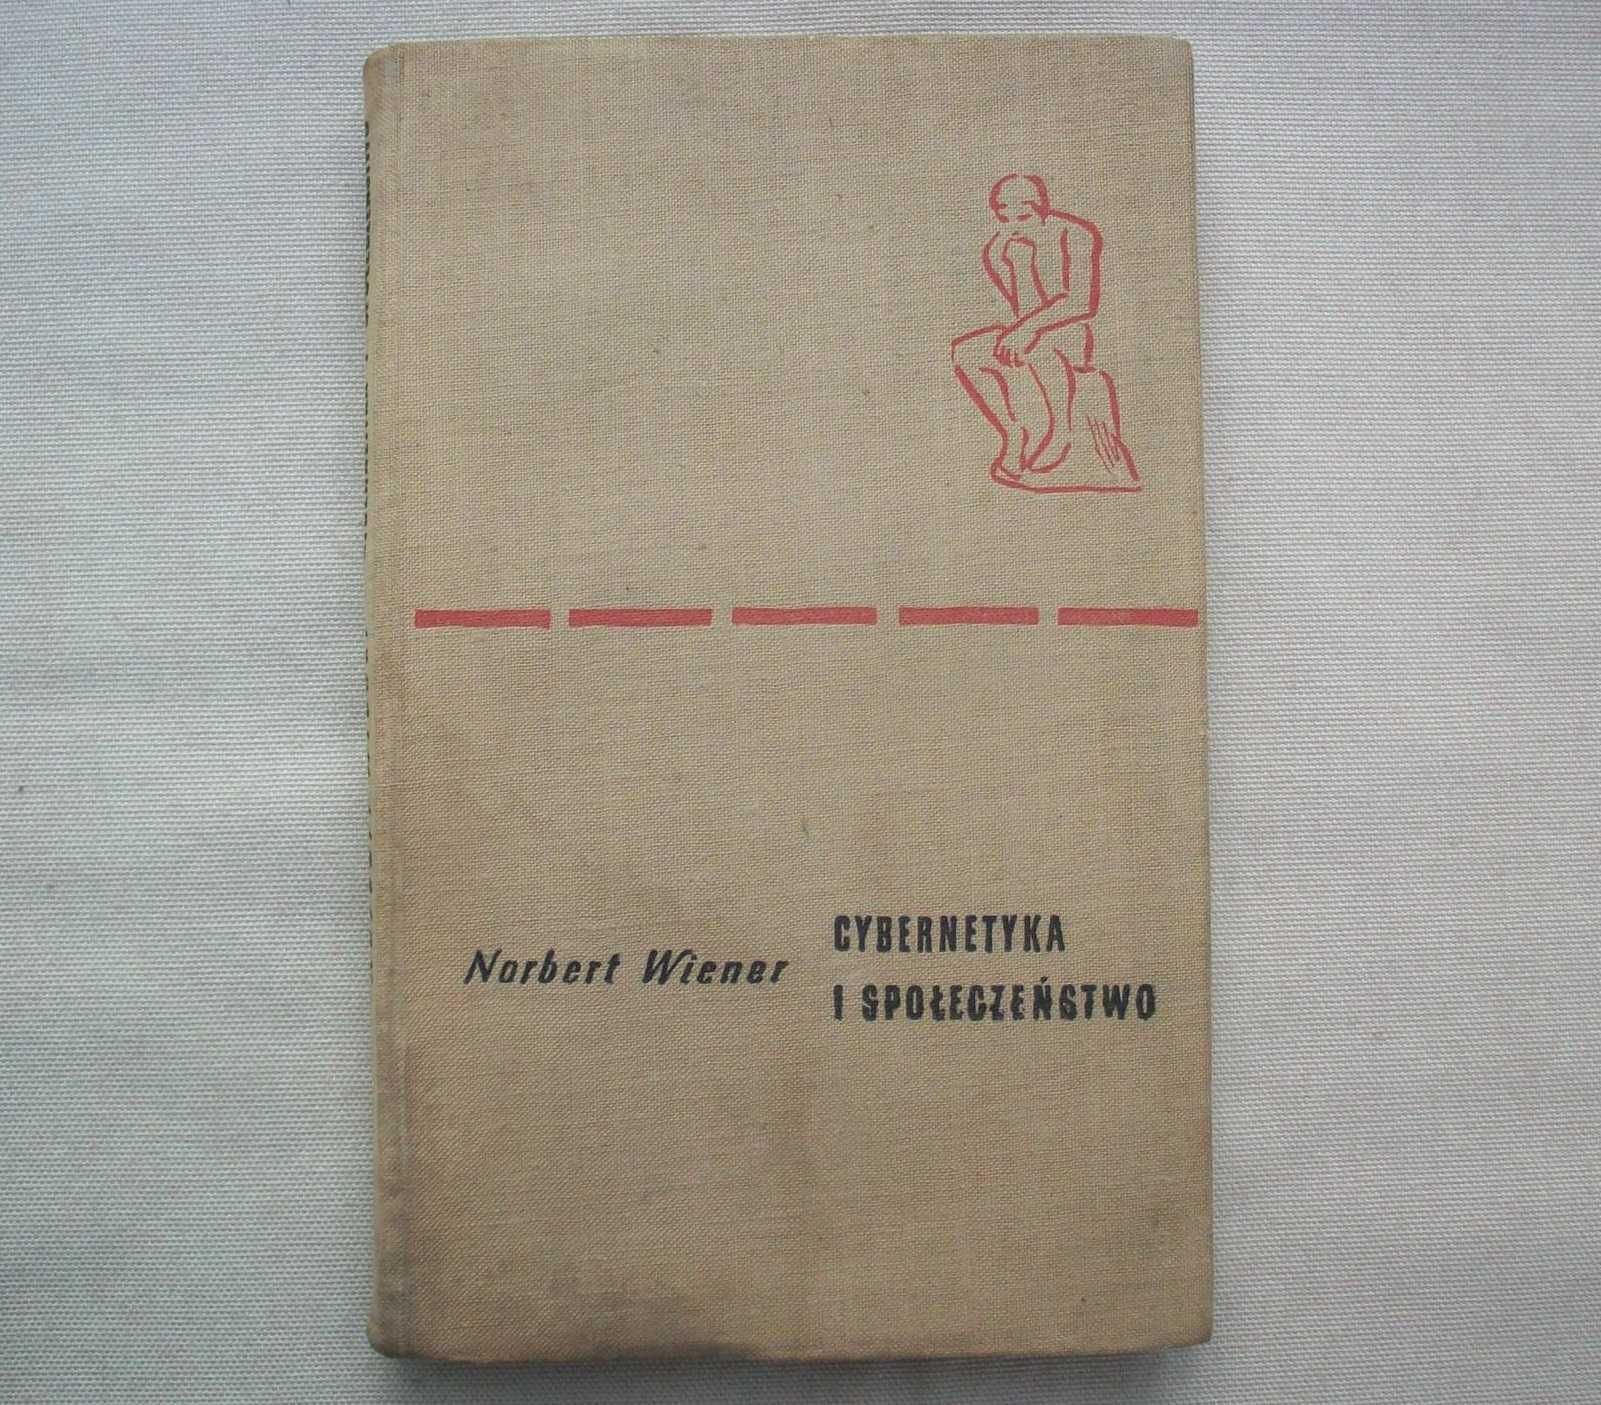 Cybernetyka i społeczeństwo, N.Wiener, 1960.